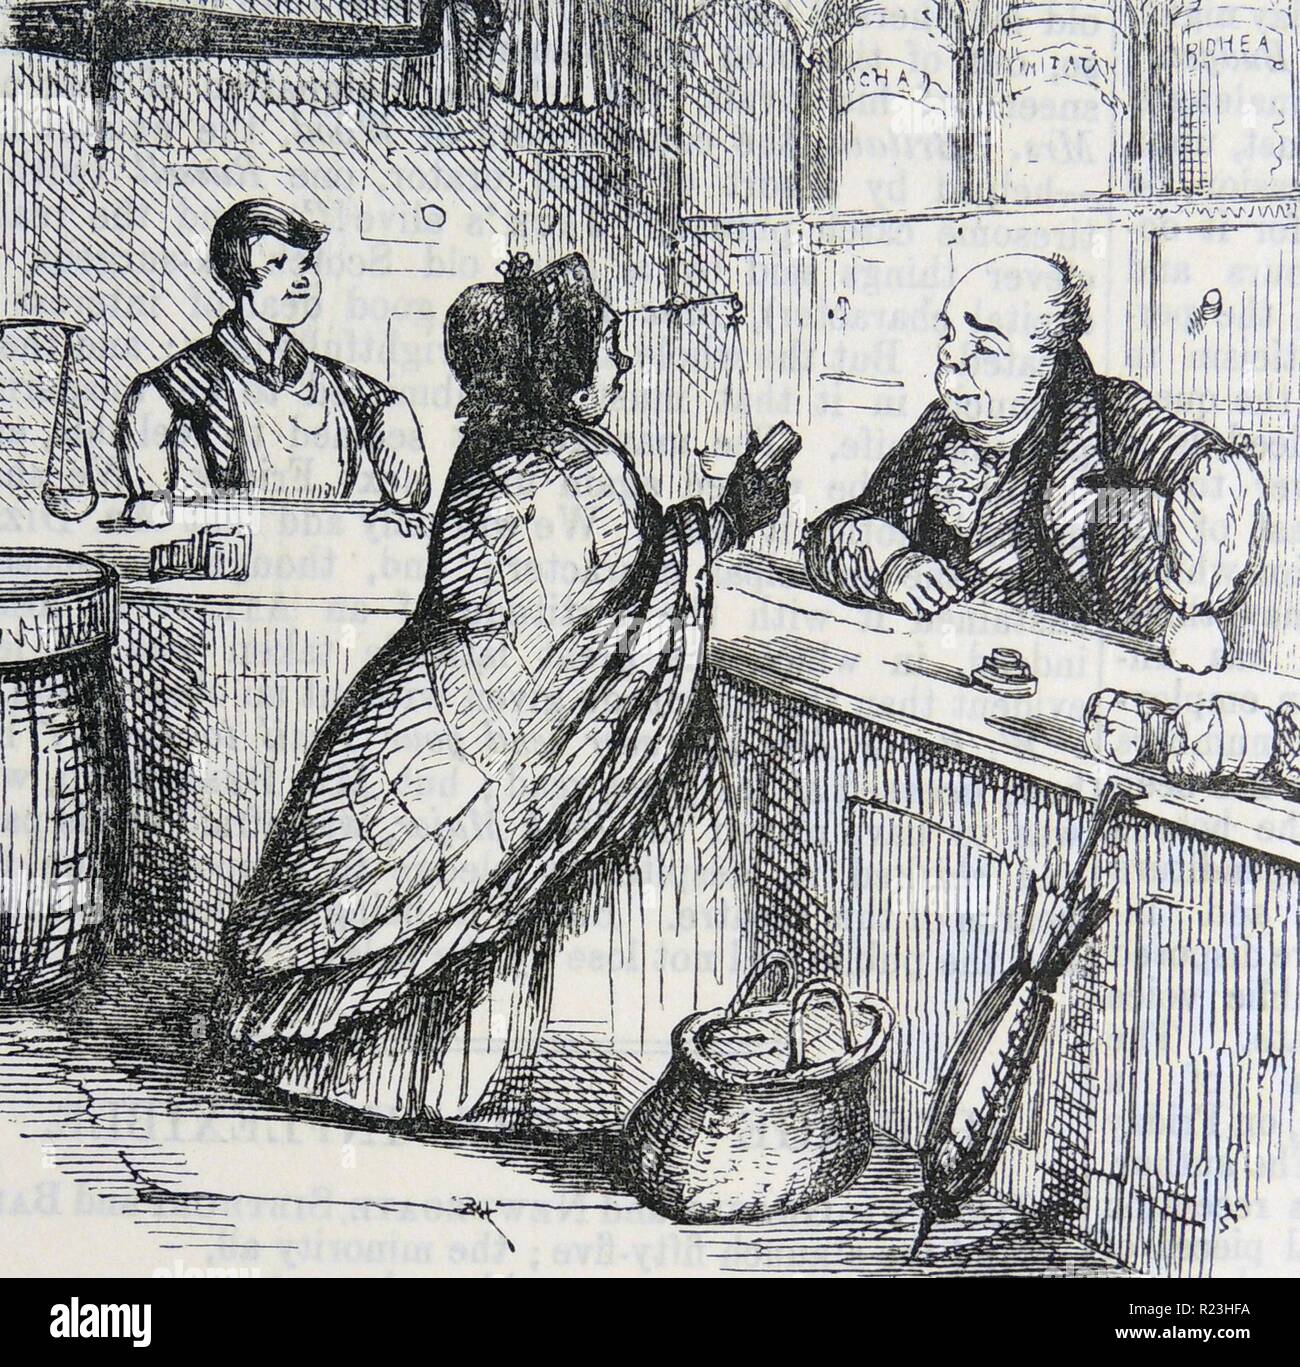 Se plaindre à la femme que l'épicier, il a vendu son café adultéré à moins cher la chicorée. Caricature de ''punch'', Londres, 1852. Banque D'Images